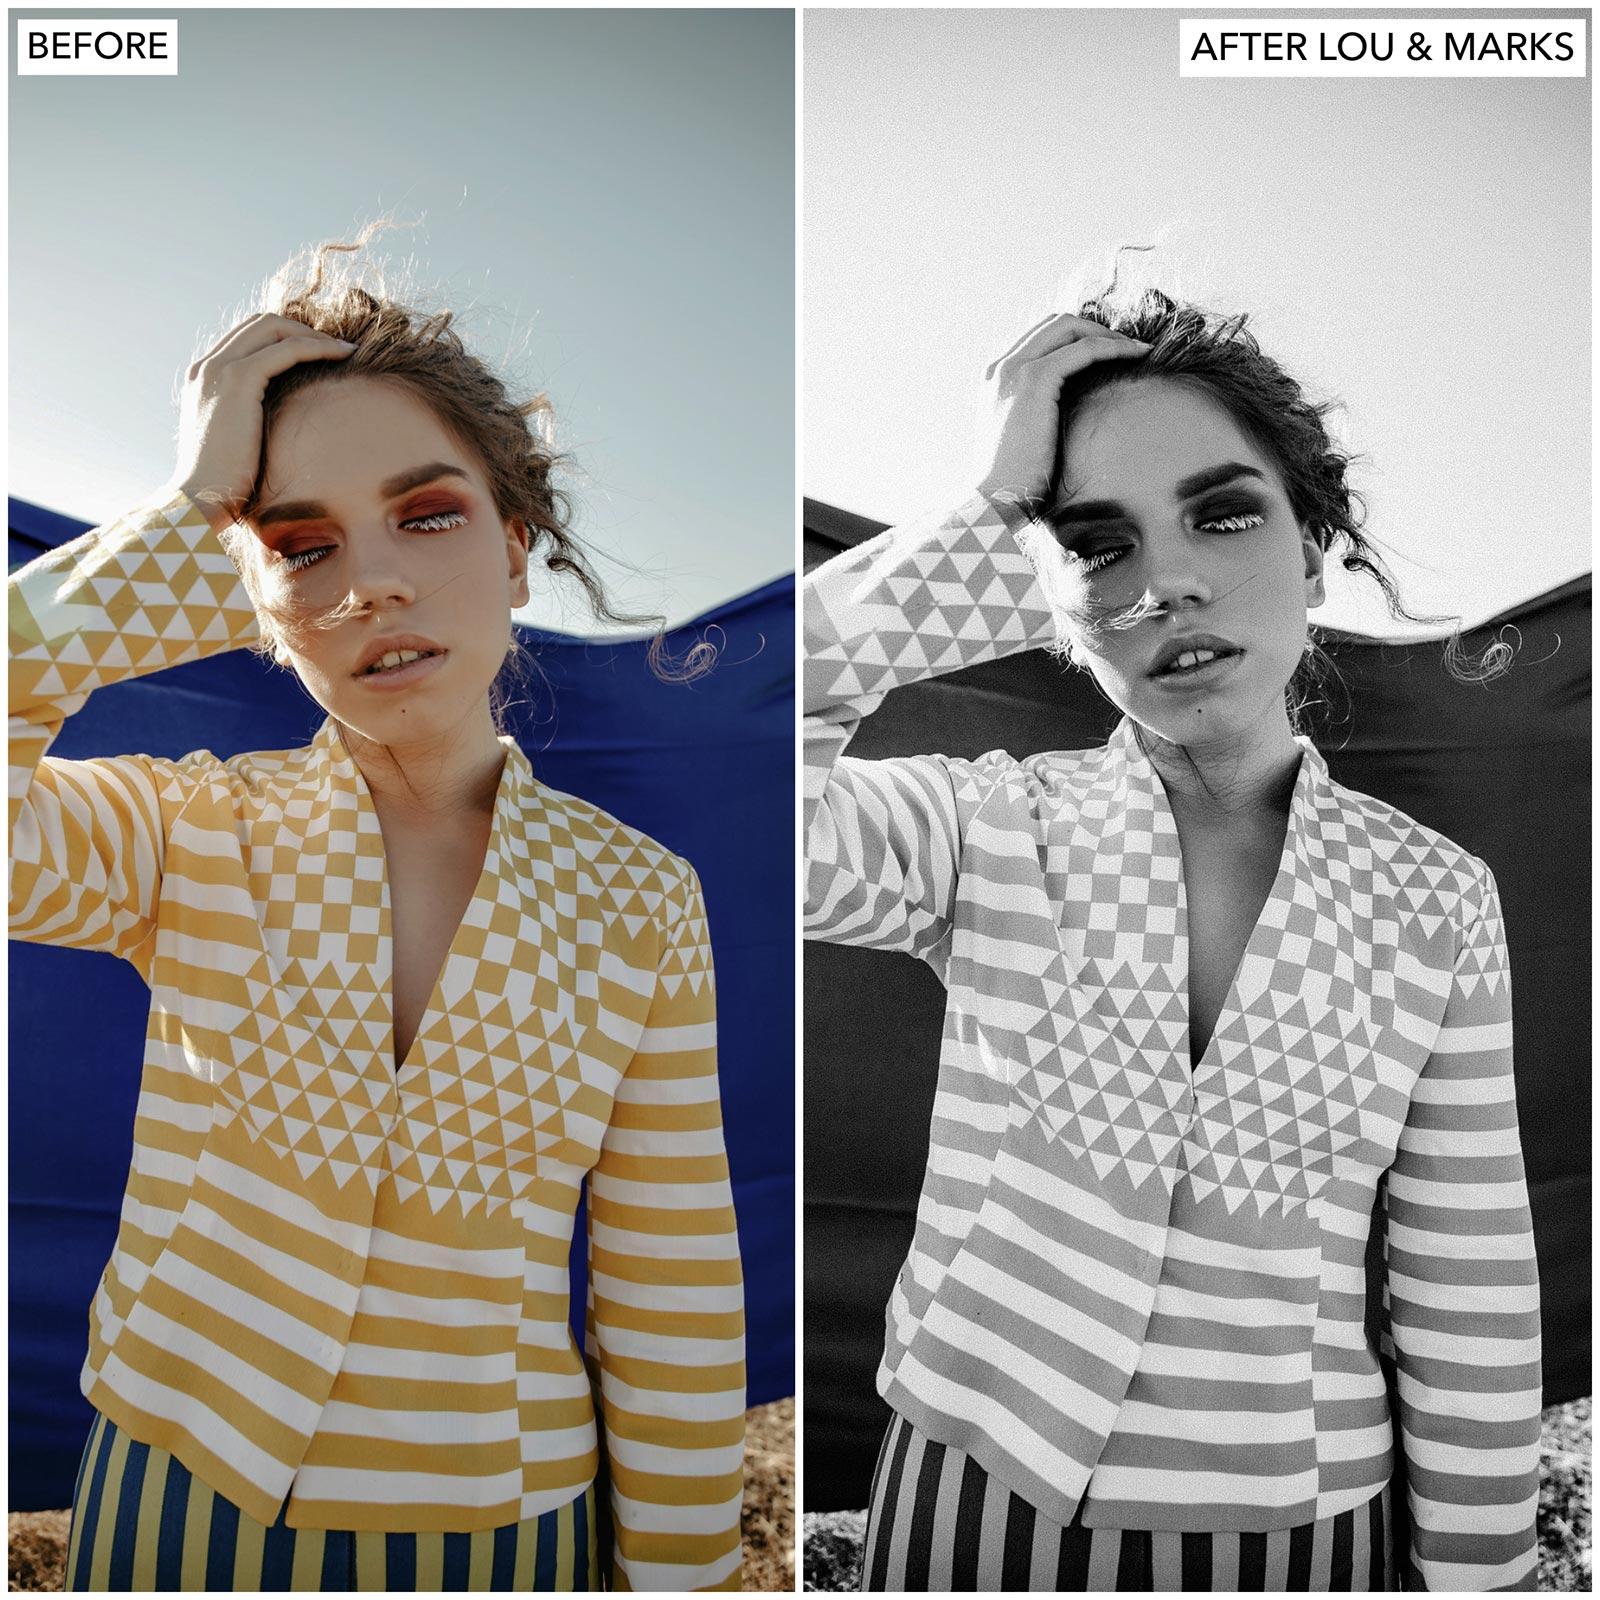  Kodak black and white Film Filter Lightroom Presets For Adobe Lightroom Mobile & Desktop By Lou And Marks Presets portrait